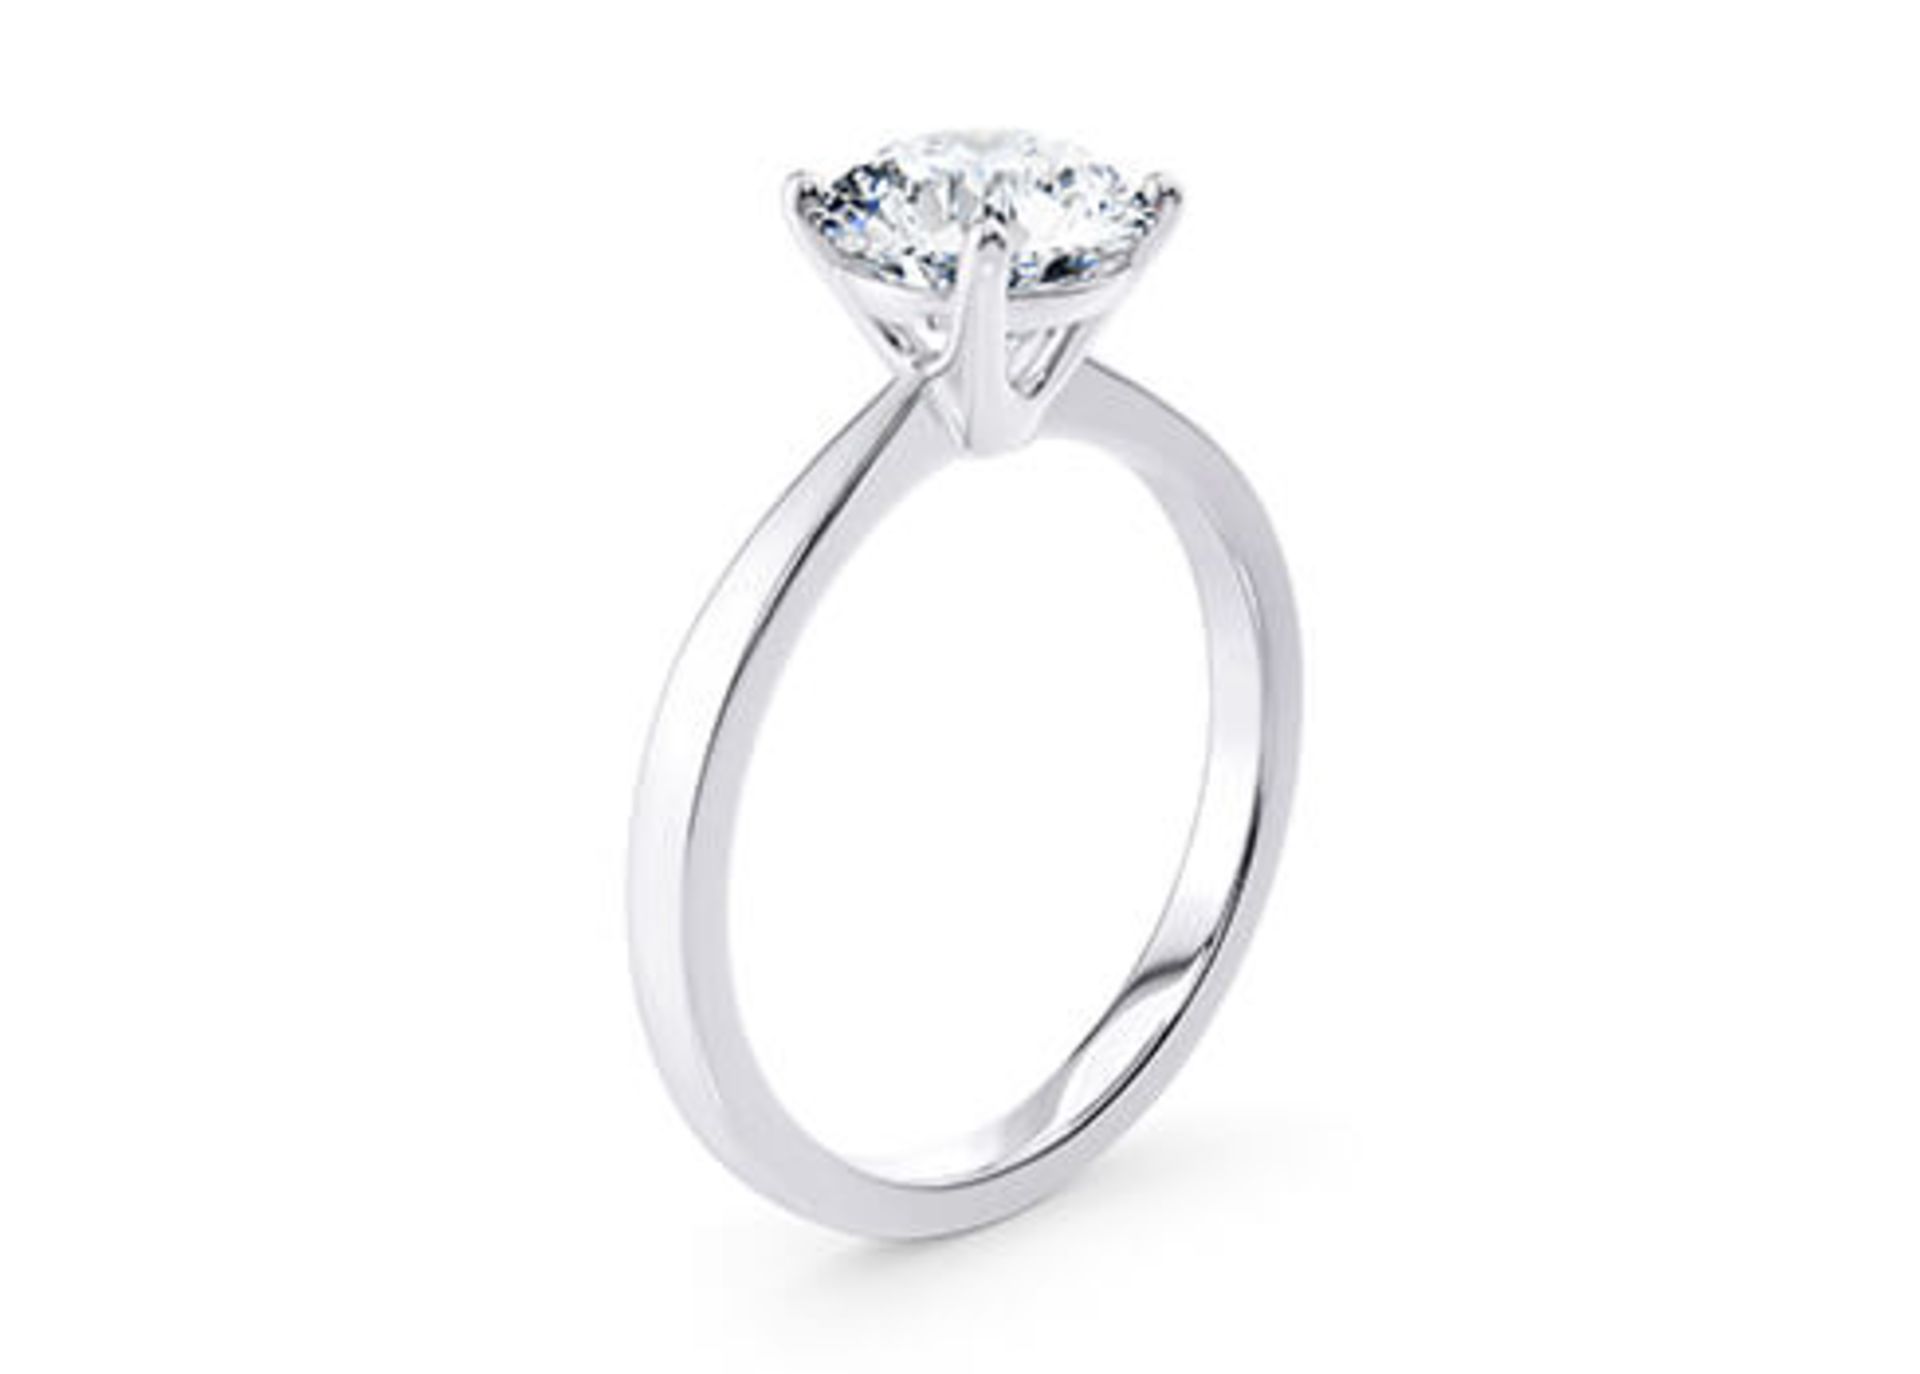 ** ON SALE ** Round Brilliant Cut Diamond Platinum Ring 2.00 Carat D Colour VS1 Clarity IDEAL EX EX - Bild 2 aus 3